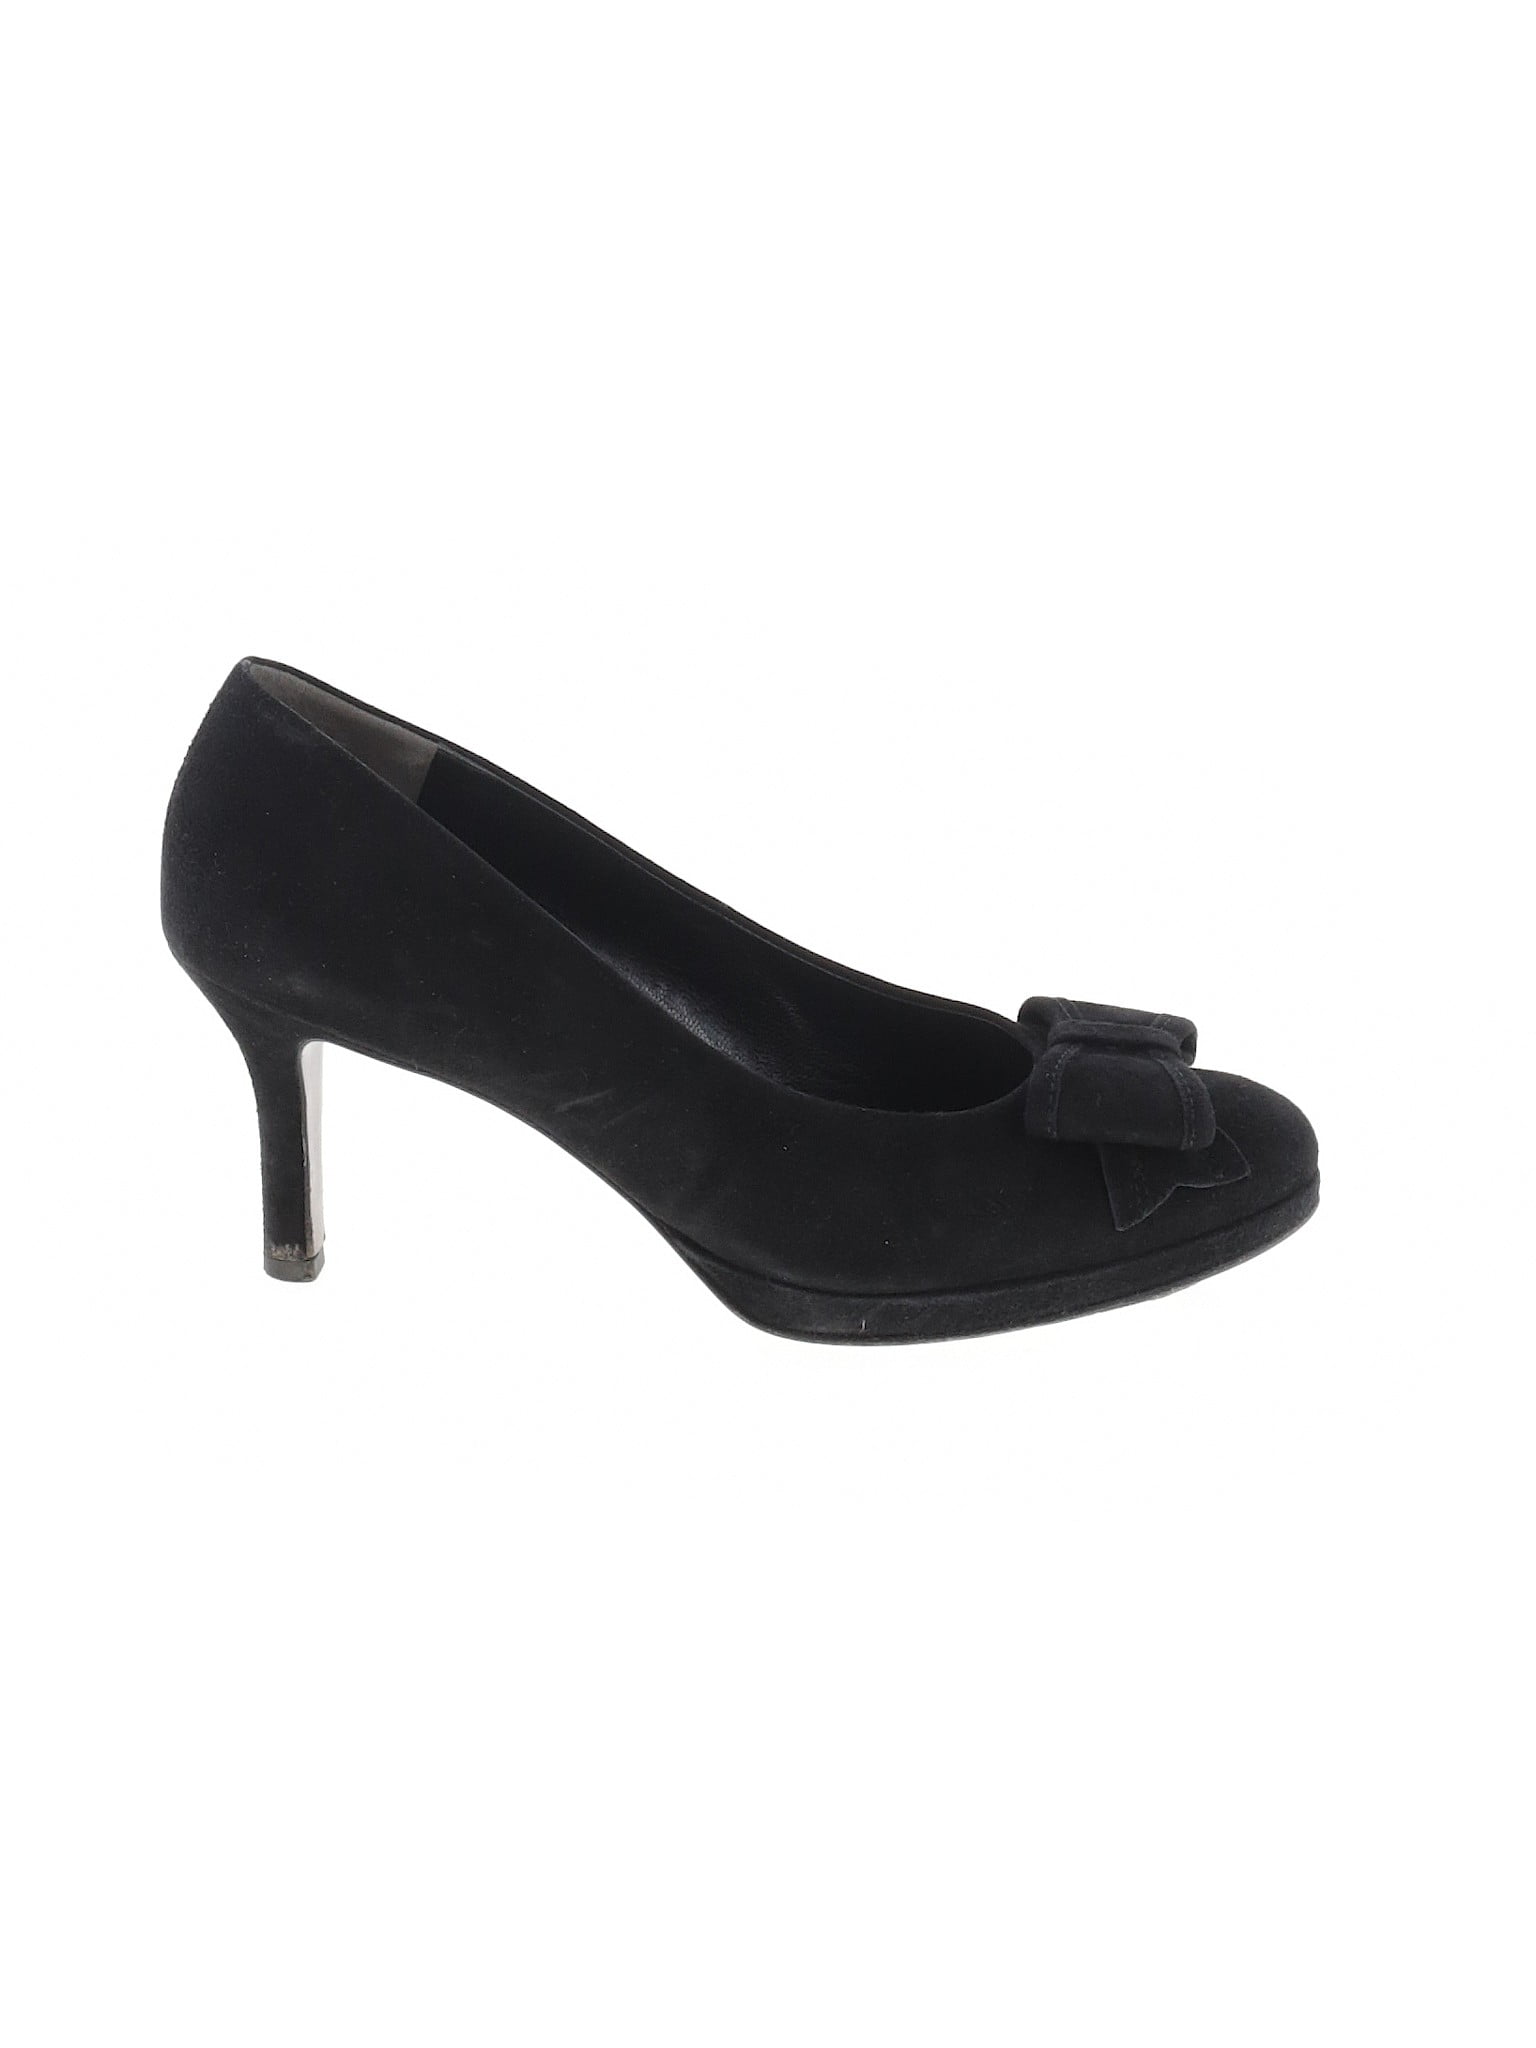 size 4.5 heels